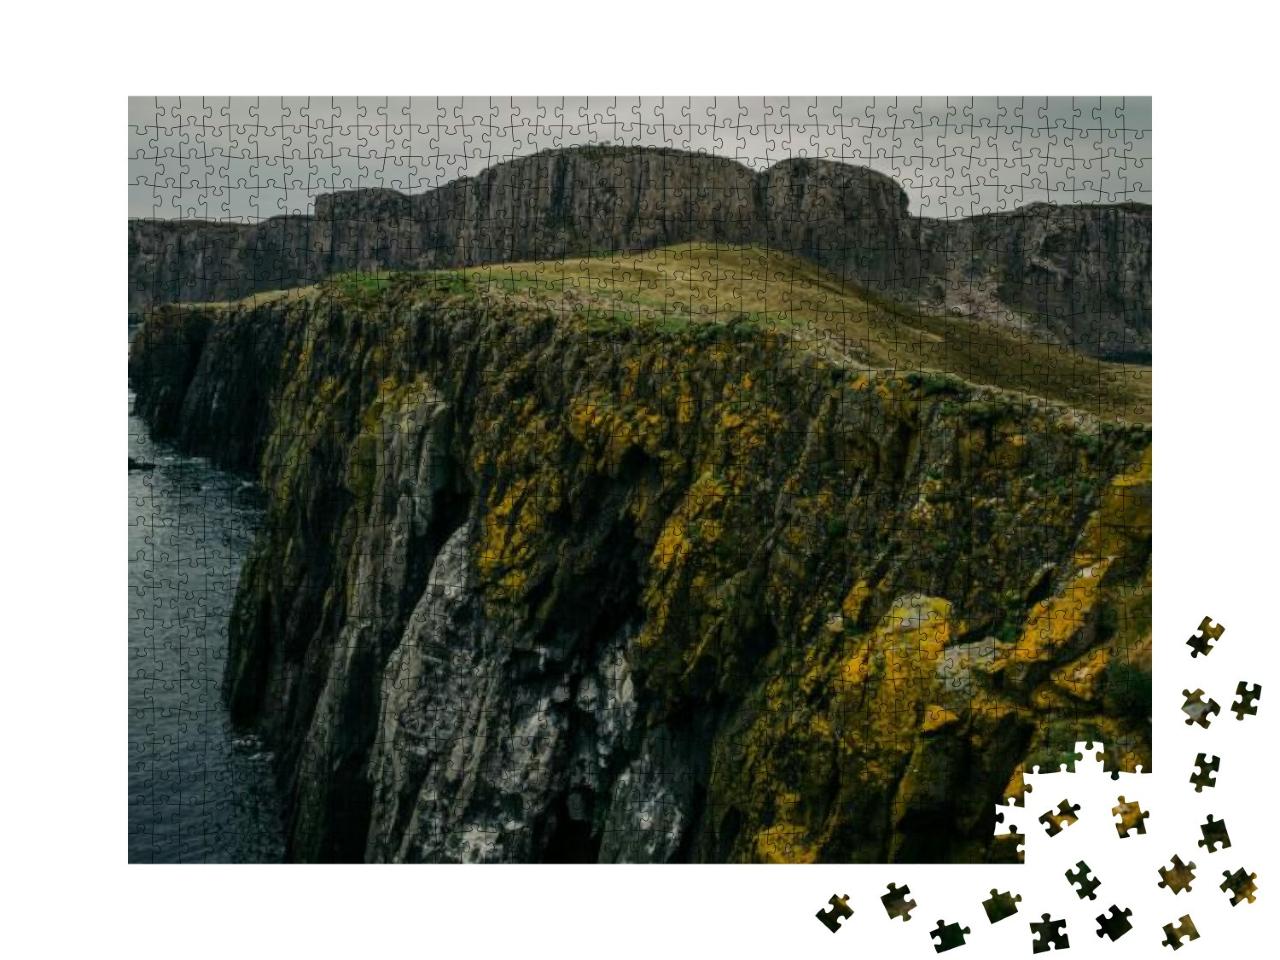 Puzzle 1000 Teile „Klippen mit orangem Moos am Meer: Isle of Skye, Schottlanf“